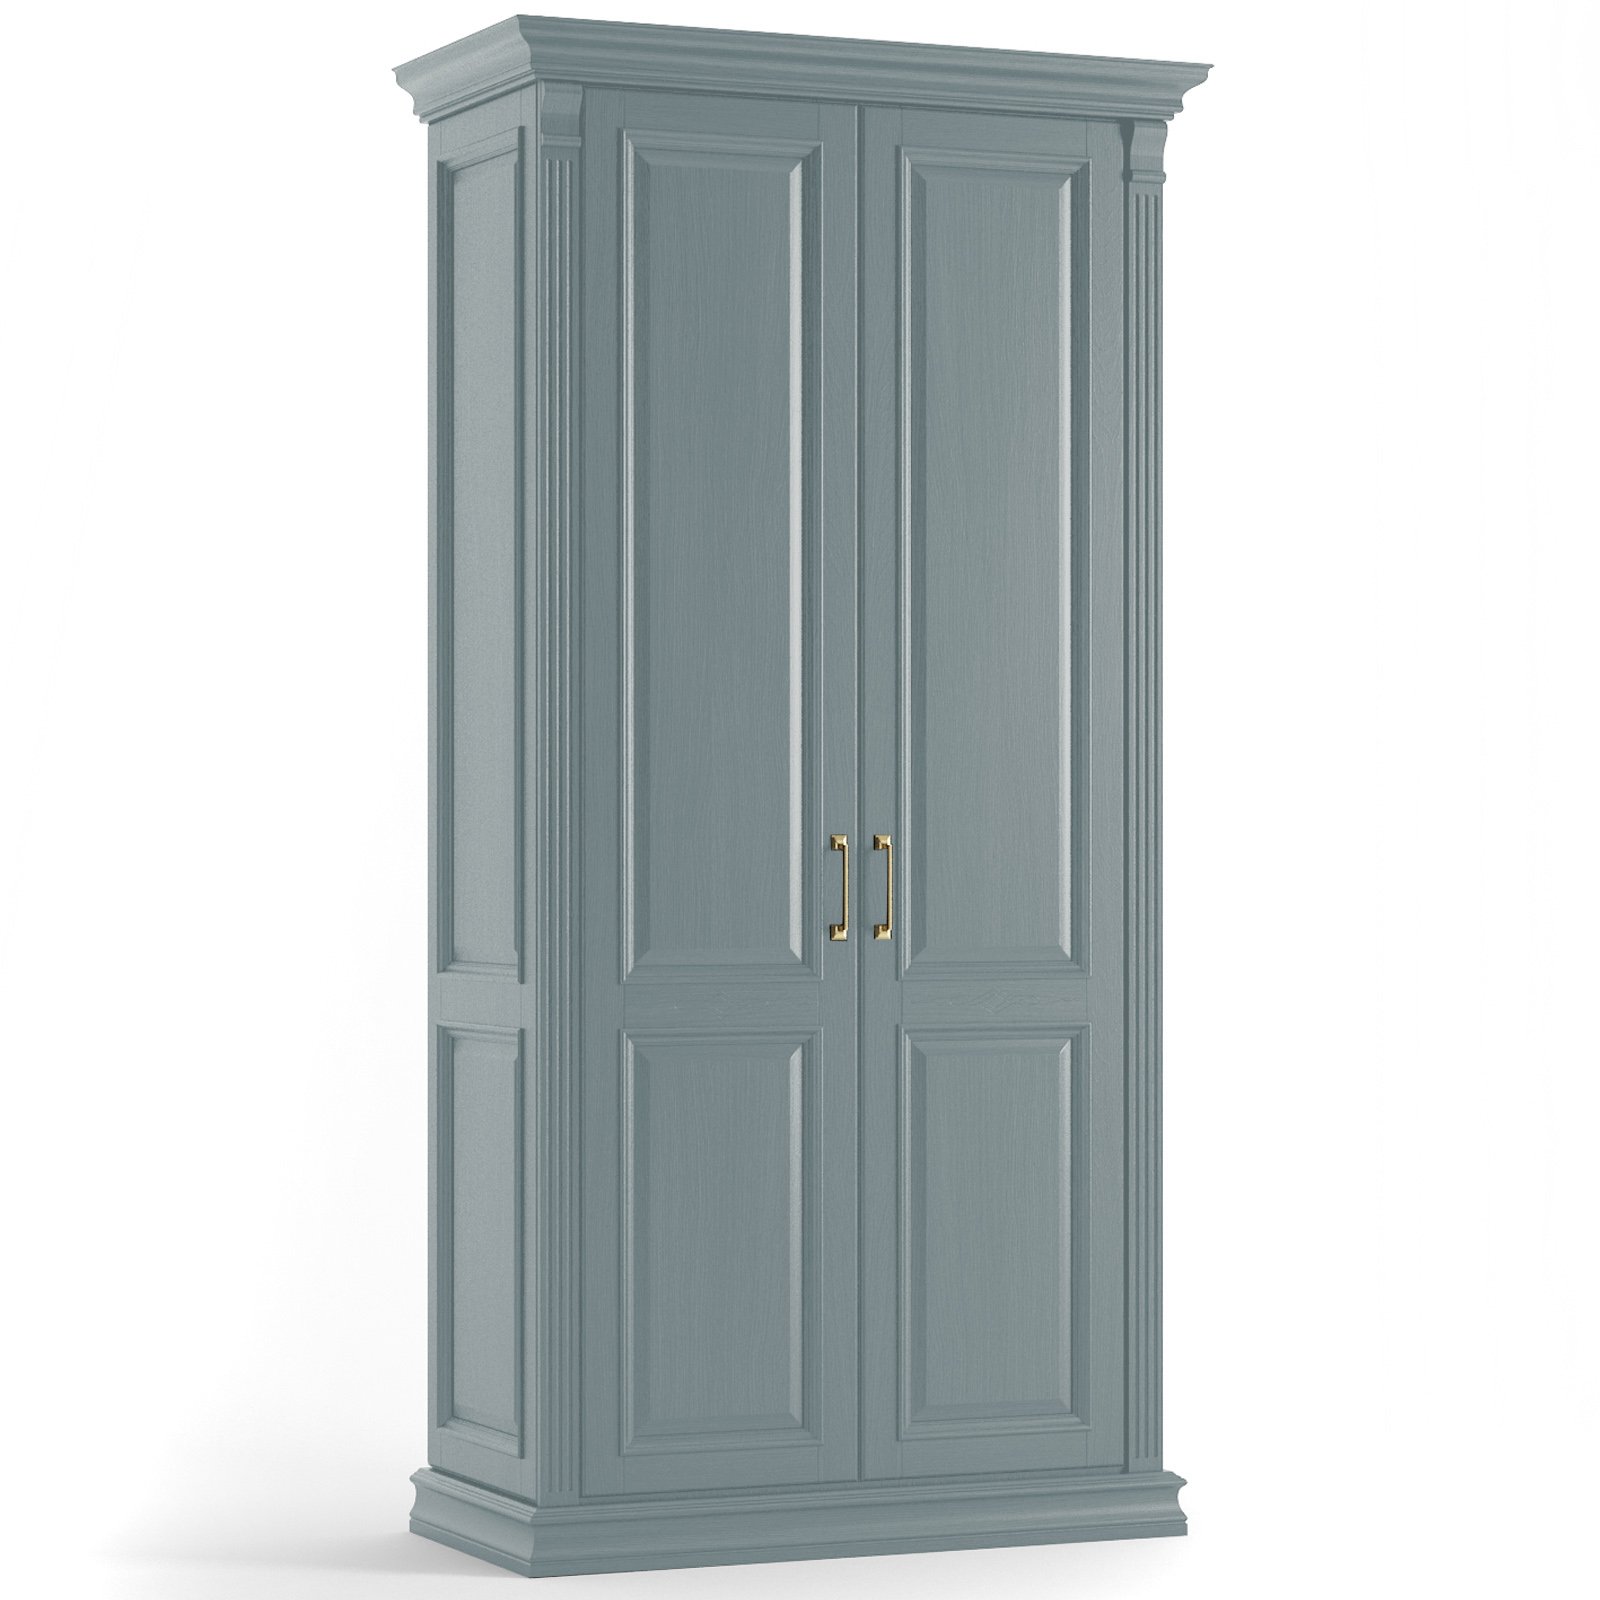 Шкаф платяной SDK Home Rimar двухдверный, цвет: лагуна (RM.P02.102х64.U.L)RM.P02.102х64.U.L